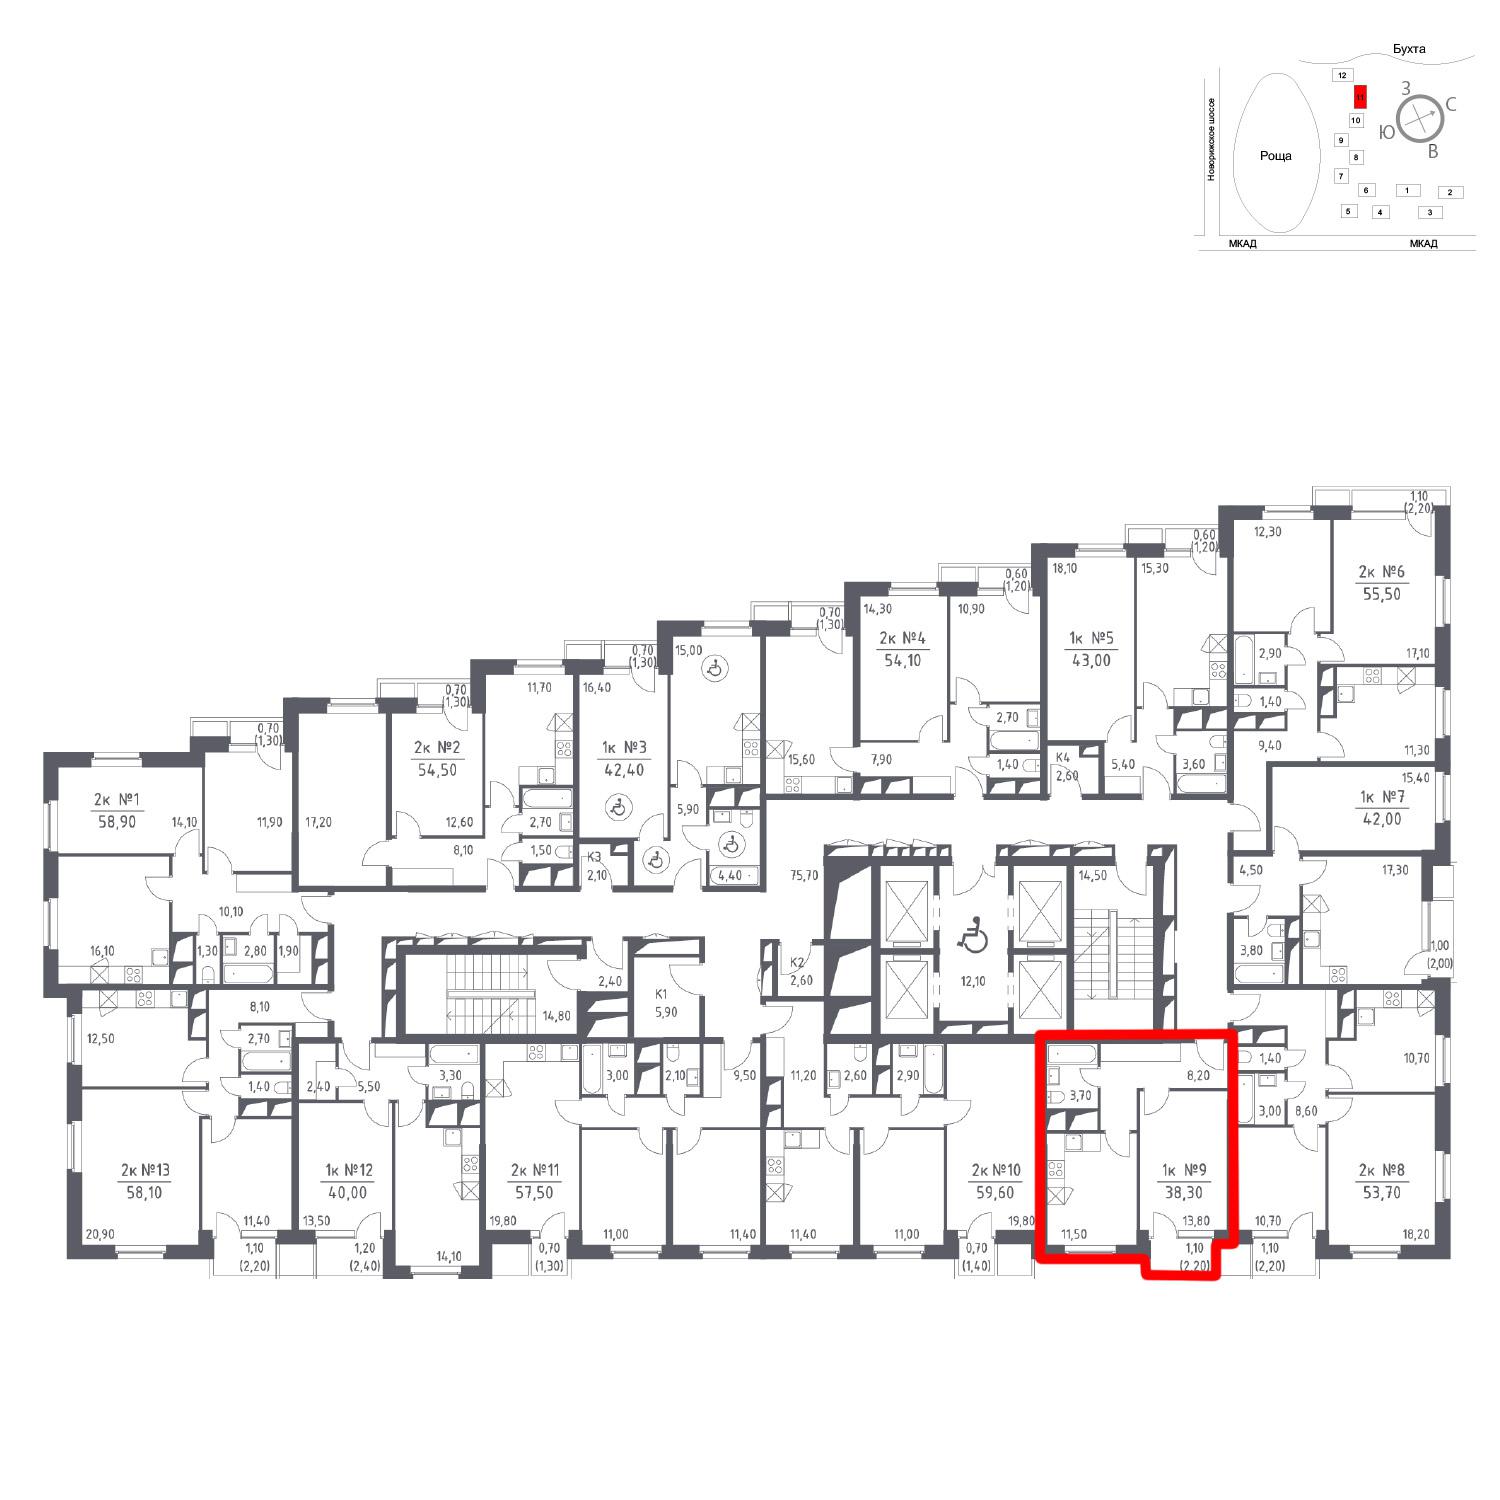 Продаётся 1-комнатная квартира в новостройке 38.3 кв.м. этаж 17/33 за 0 руб 